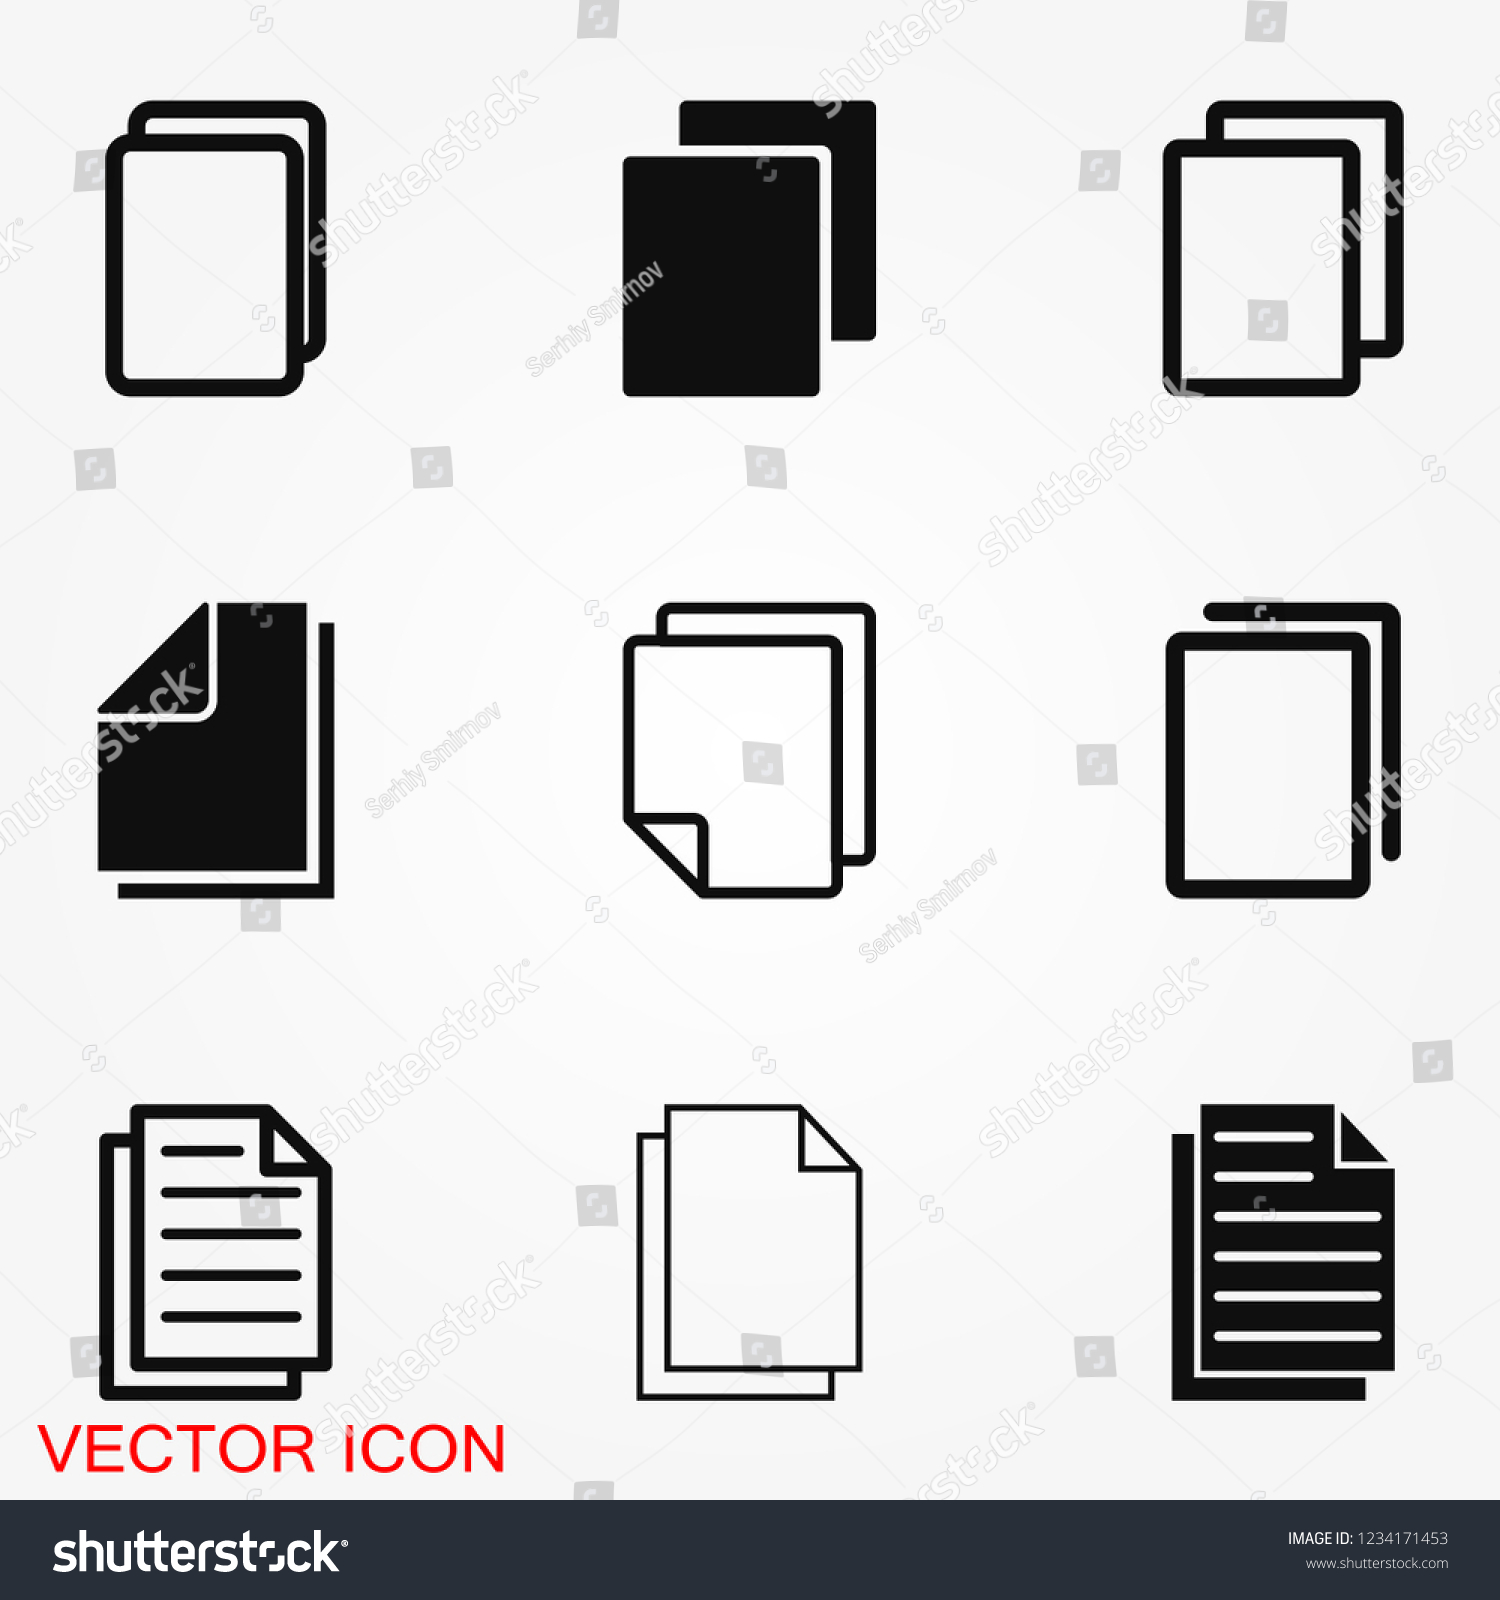 Copy vector icon. Duplicate app symbol. Creative UI item #1234171453